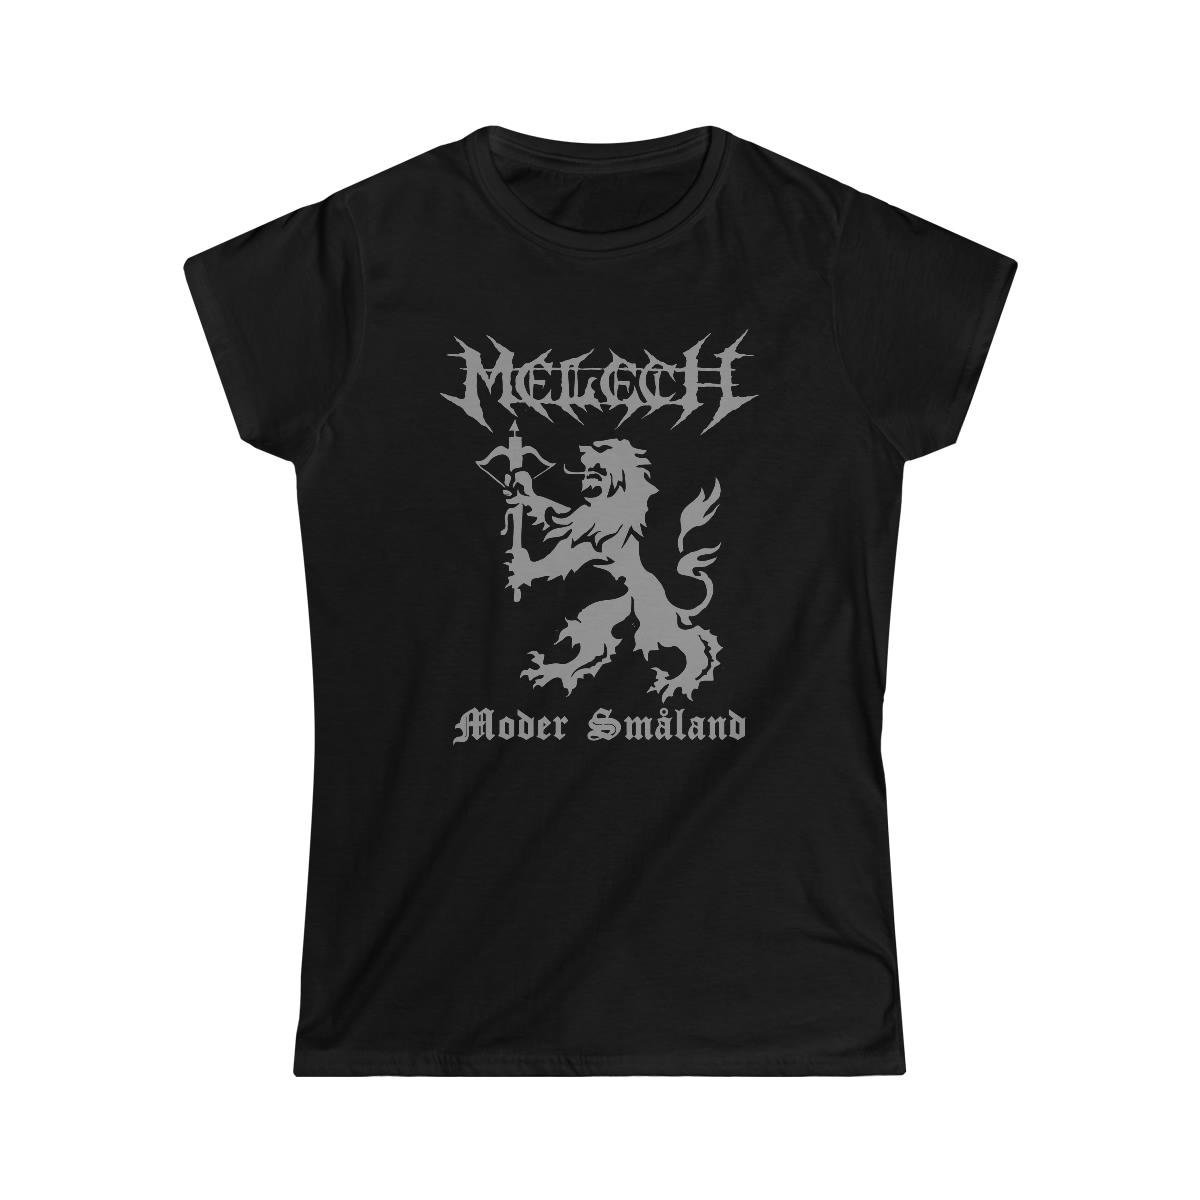 Melech Moder Småland (Grey) Women’s Short Sleeve Tshirt